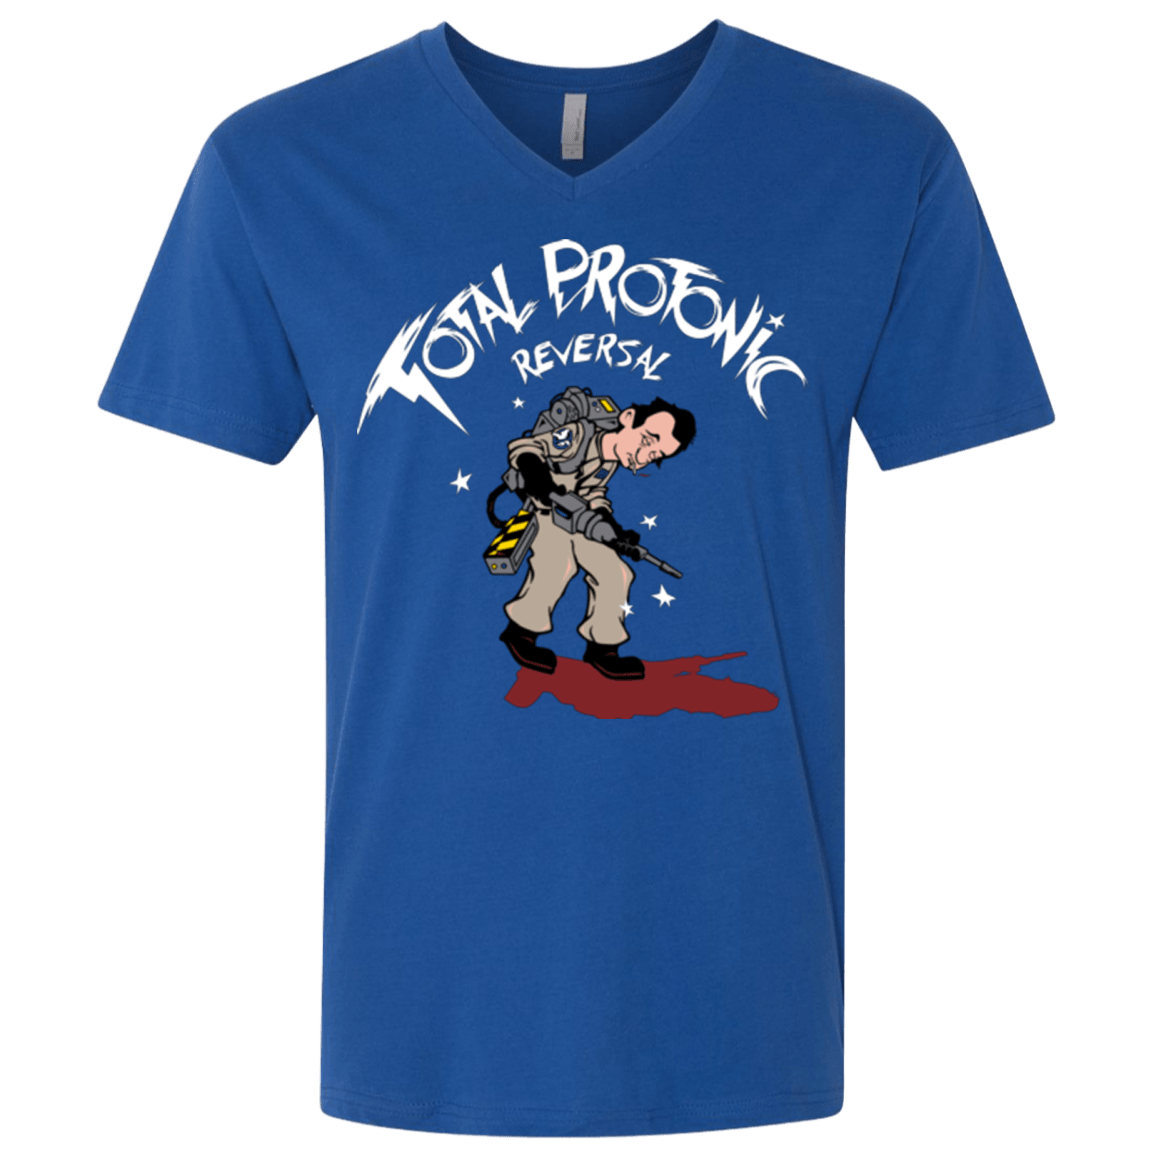 T-Shirts Royal / X-Small Total Protonic Reversal Men's Premium V-Neck